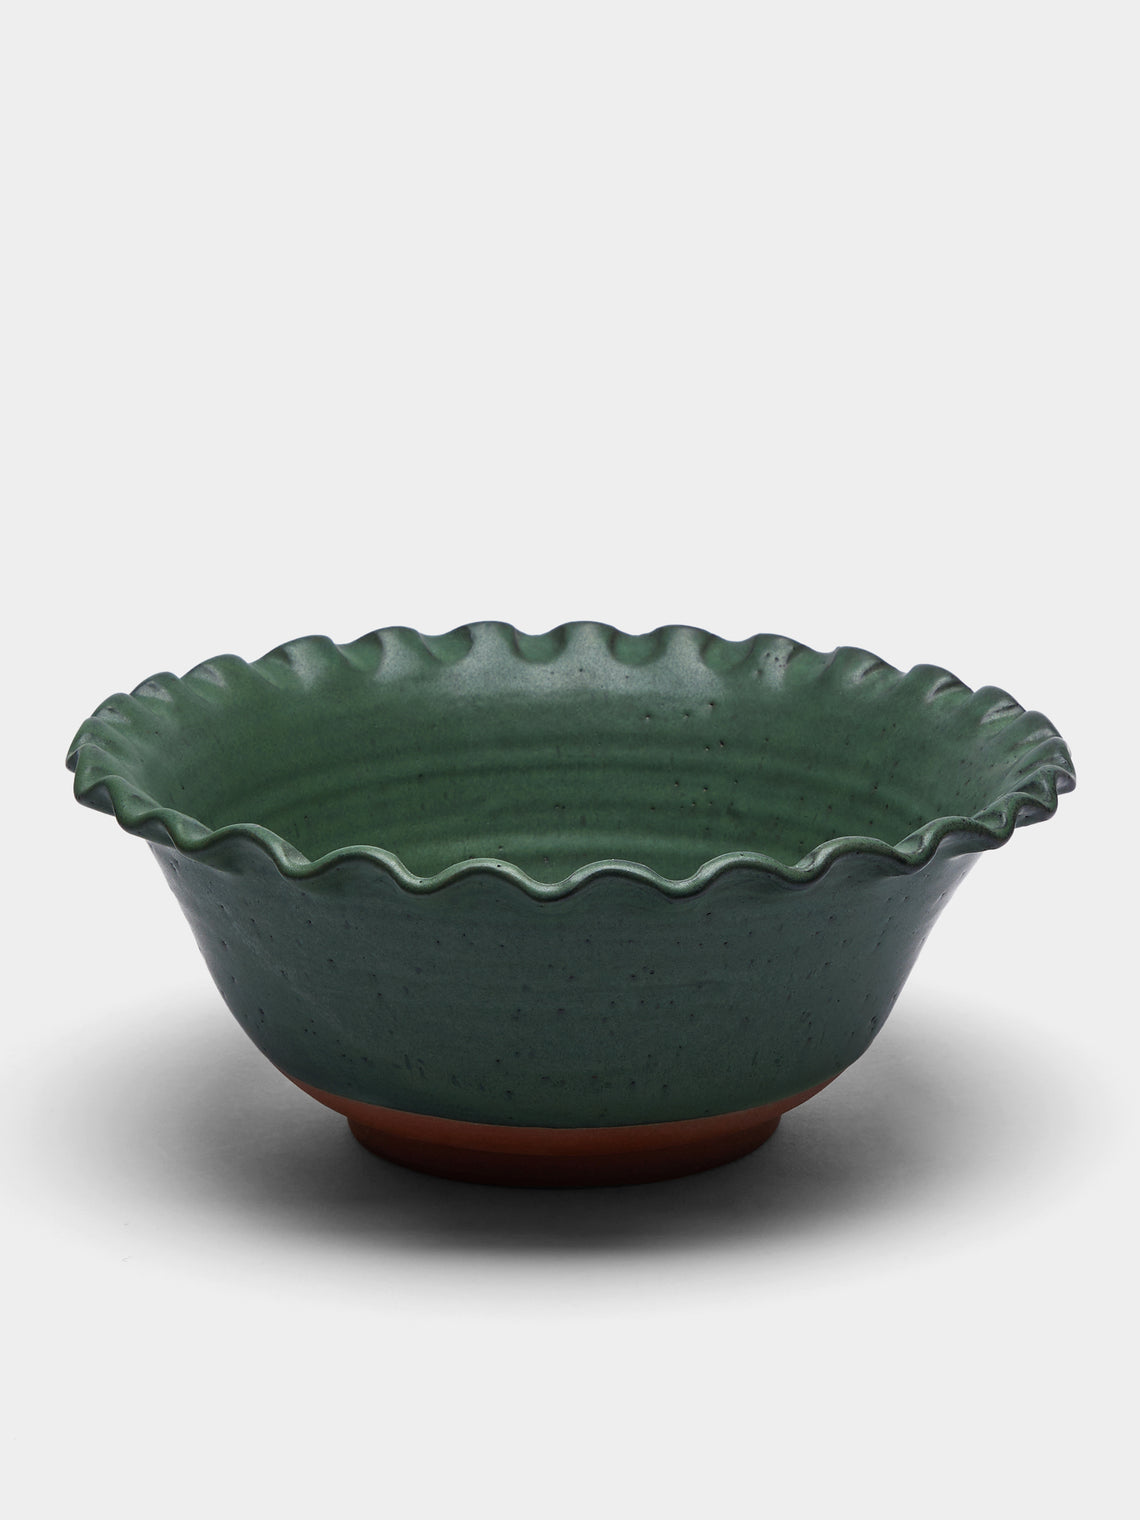 Perla Valtierra - Hand-Glazed Ceramic Large Serving Bowl - Green - ABASK - 